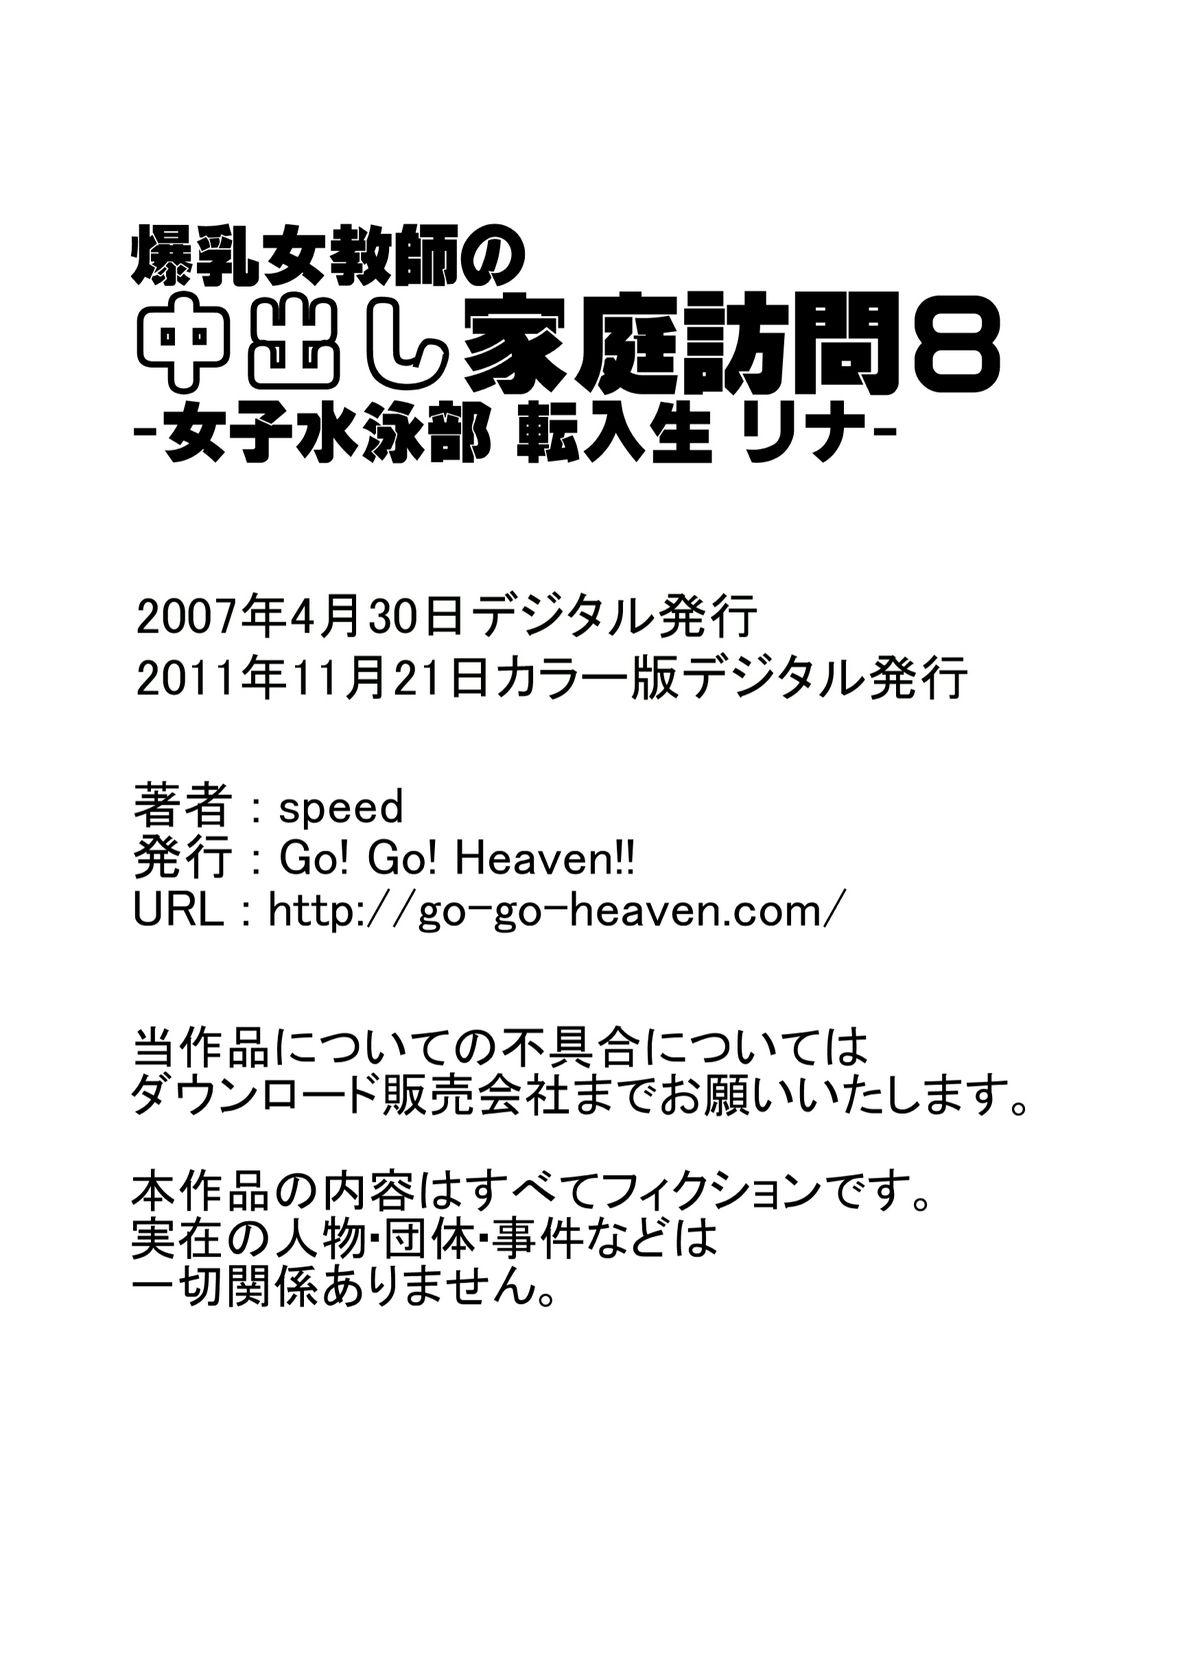 Glam [Go! Go! Heaven!! (speed)] Bakunyuu Onna Kyoushi no Nakadashi Katei Houmon 8 Color Ban - Joshi Suiei-bu Tennyuusei Rina - Amature Porn - Page 15